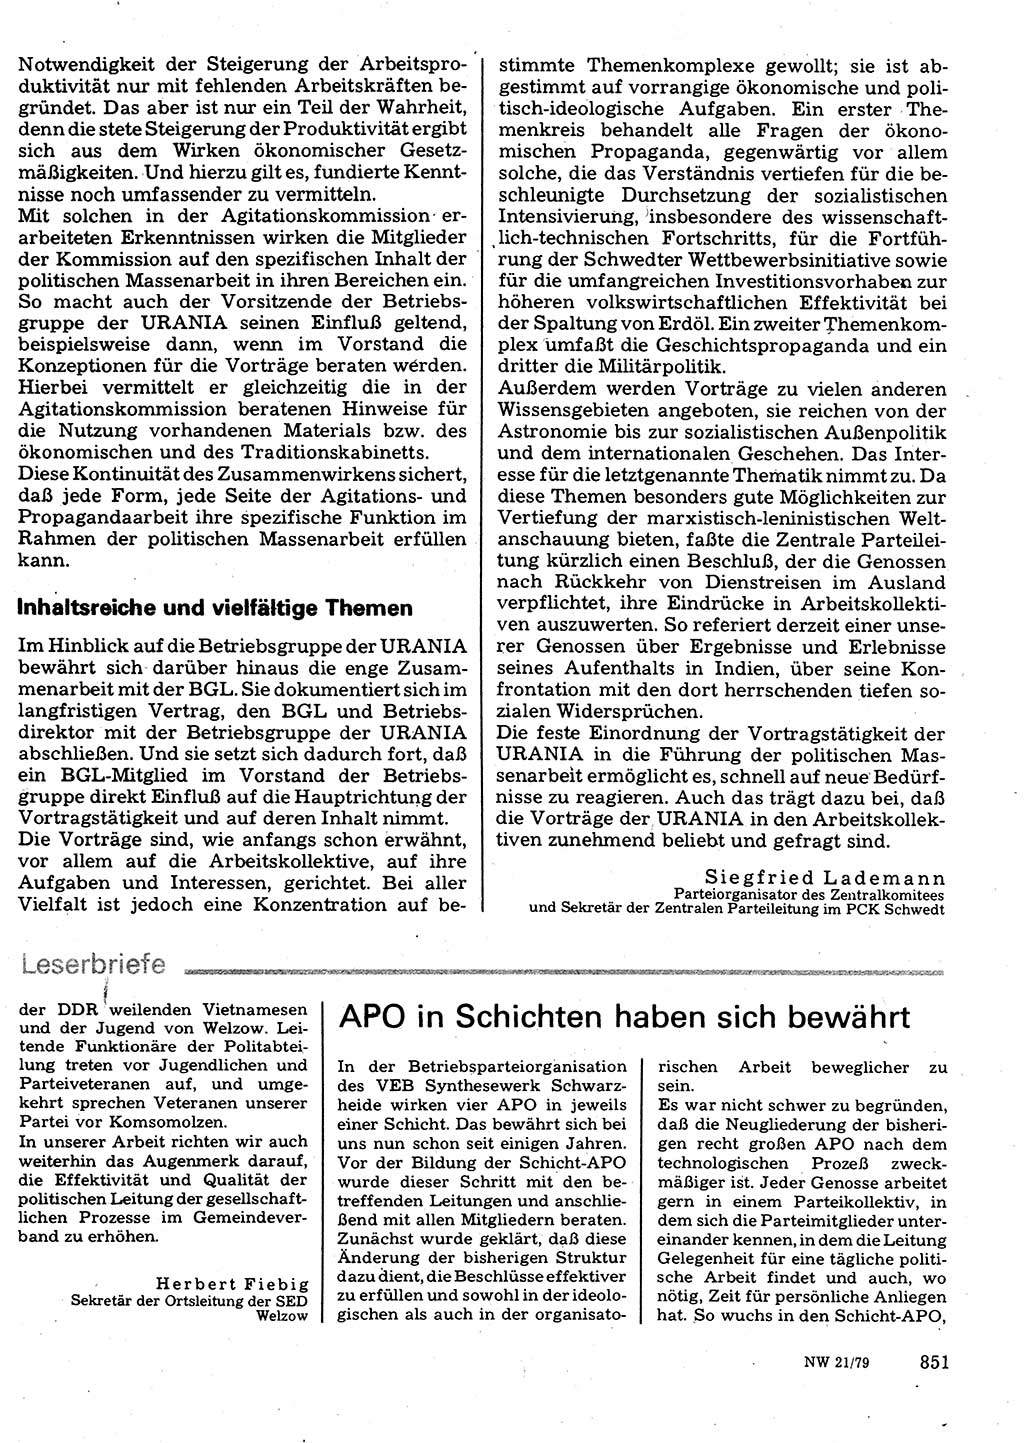 Neuer Weg (NW), Organ des Zentralkomitees (ZK) der SED (Sozialistische Einheitspartei Deutschlands) für Fragen des Parteilebens, 34. Jahrgang [Deutsche Demokratische Republik (DDR)] 1979, Seite 851 (NW ZK SED DDR 1979, S. 851)